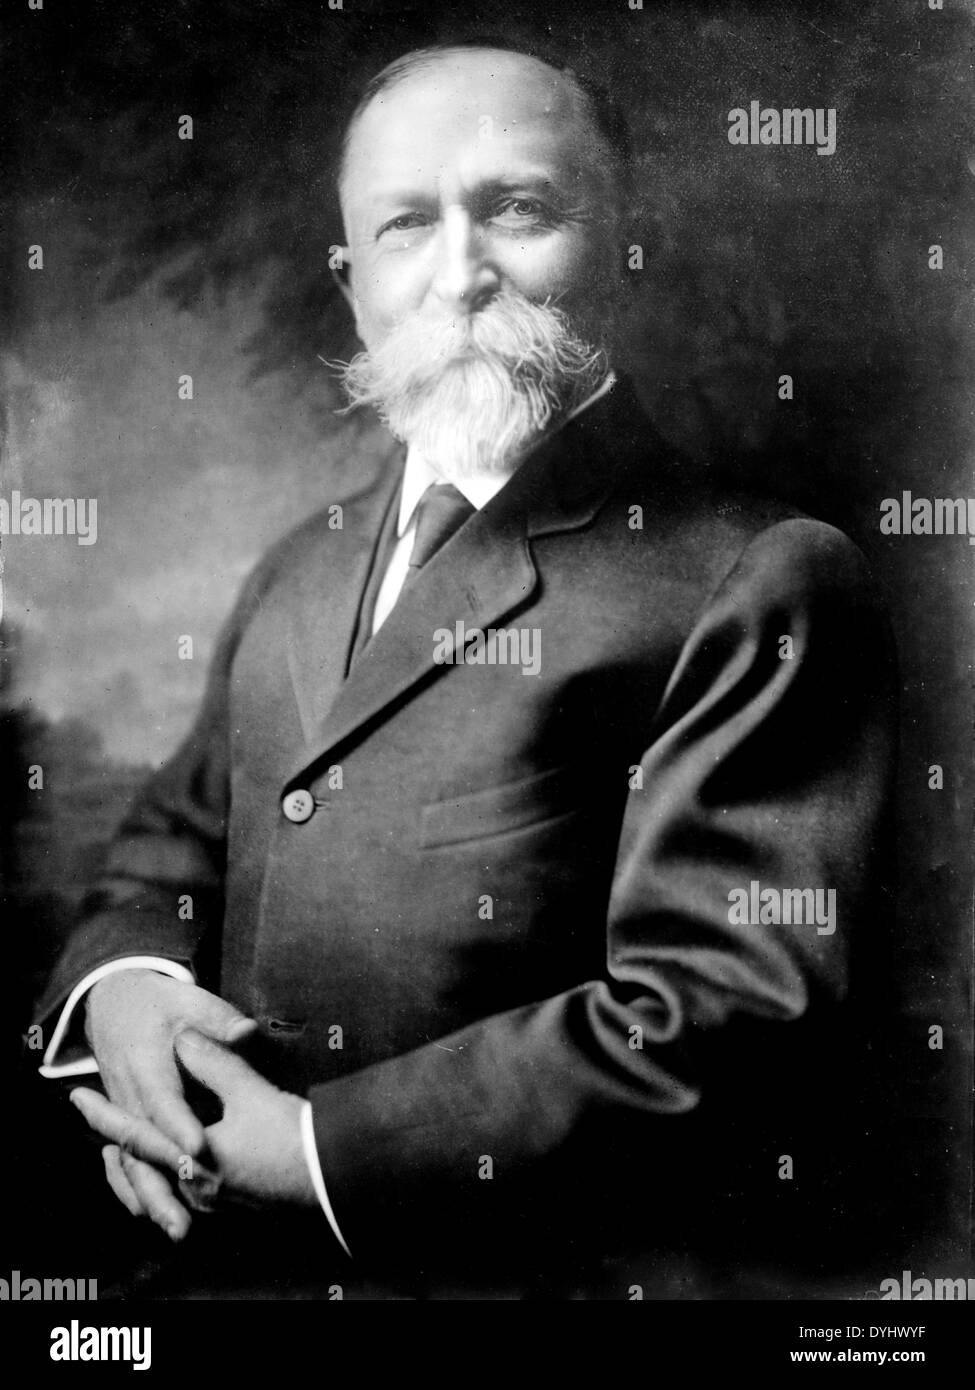 JOHN HARVEY KELLOG (1852-1943) médecin américain et co-inventeur de la céréales petit déjeuner qui porte son nom. Ici vers 1913 Banque D'Images